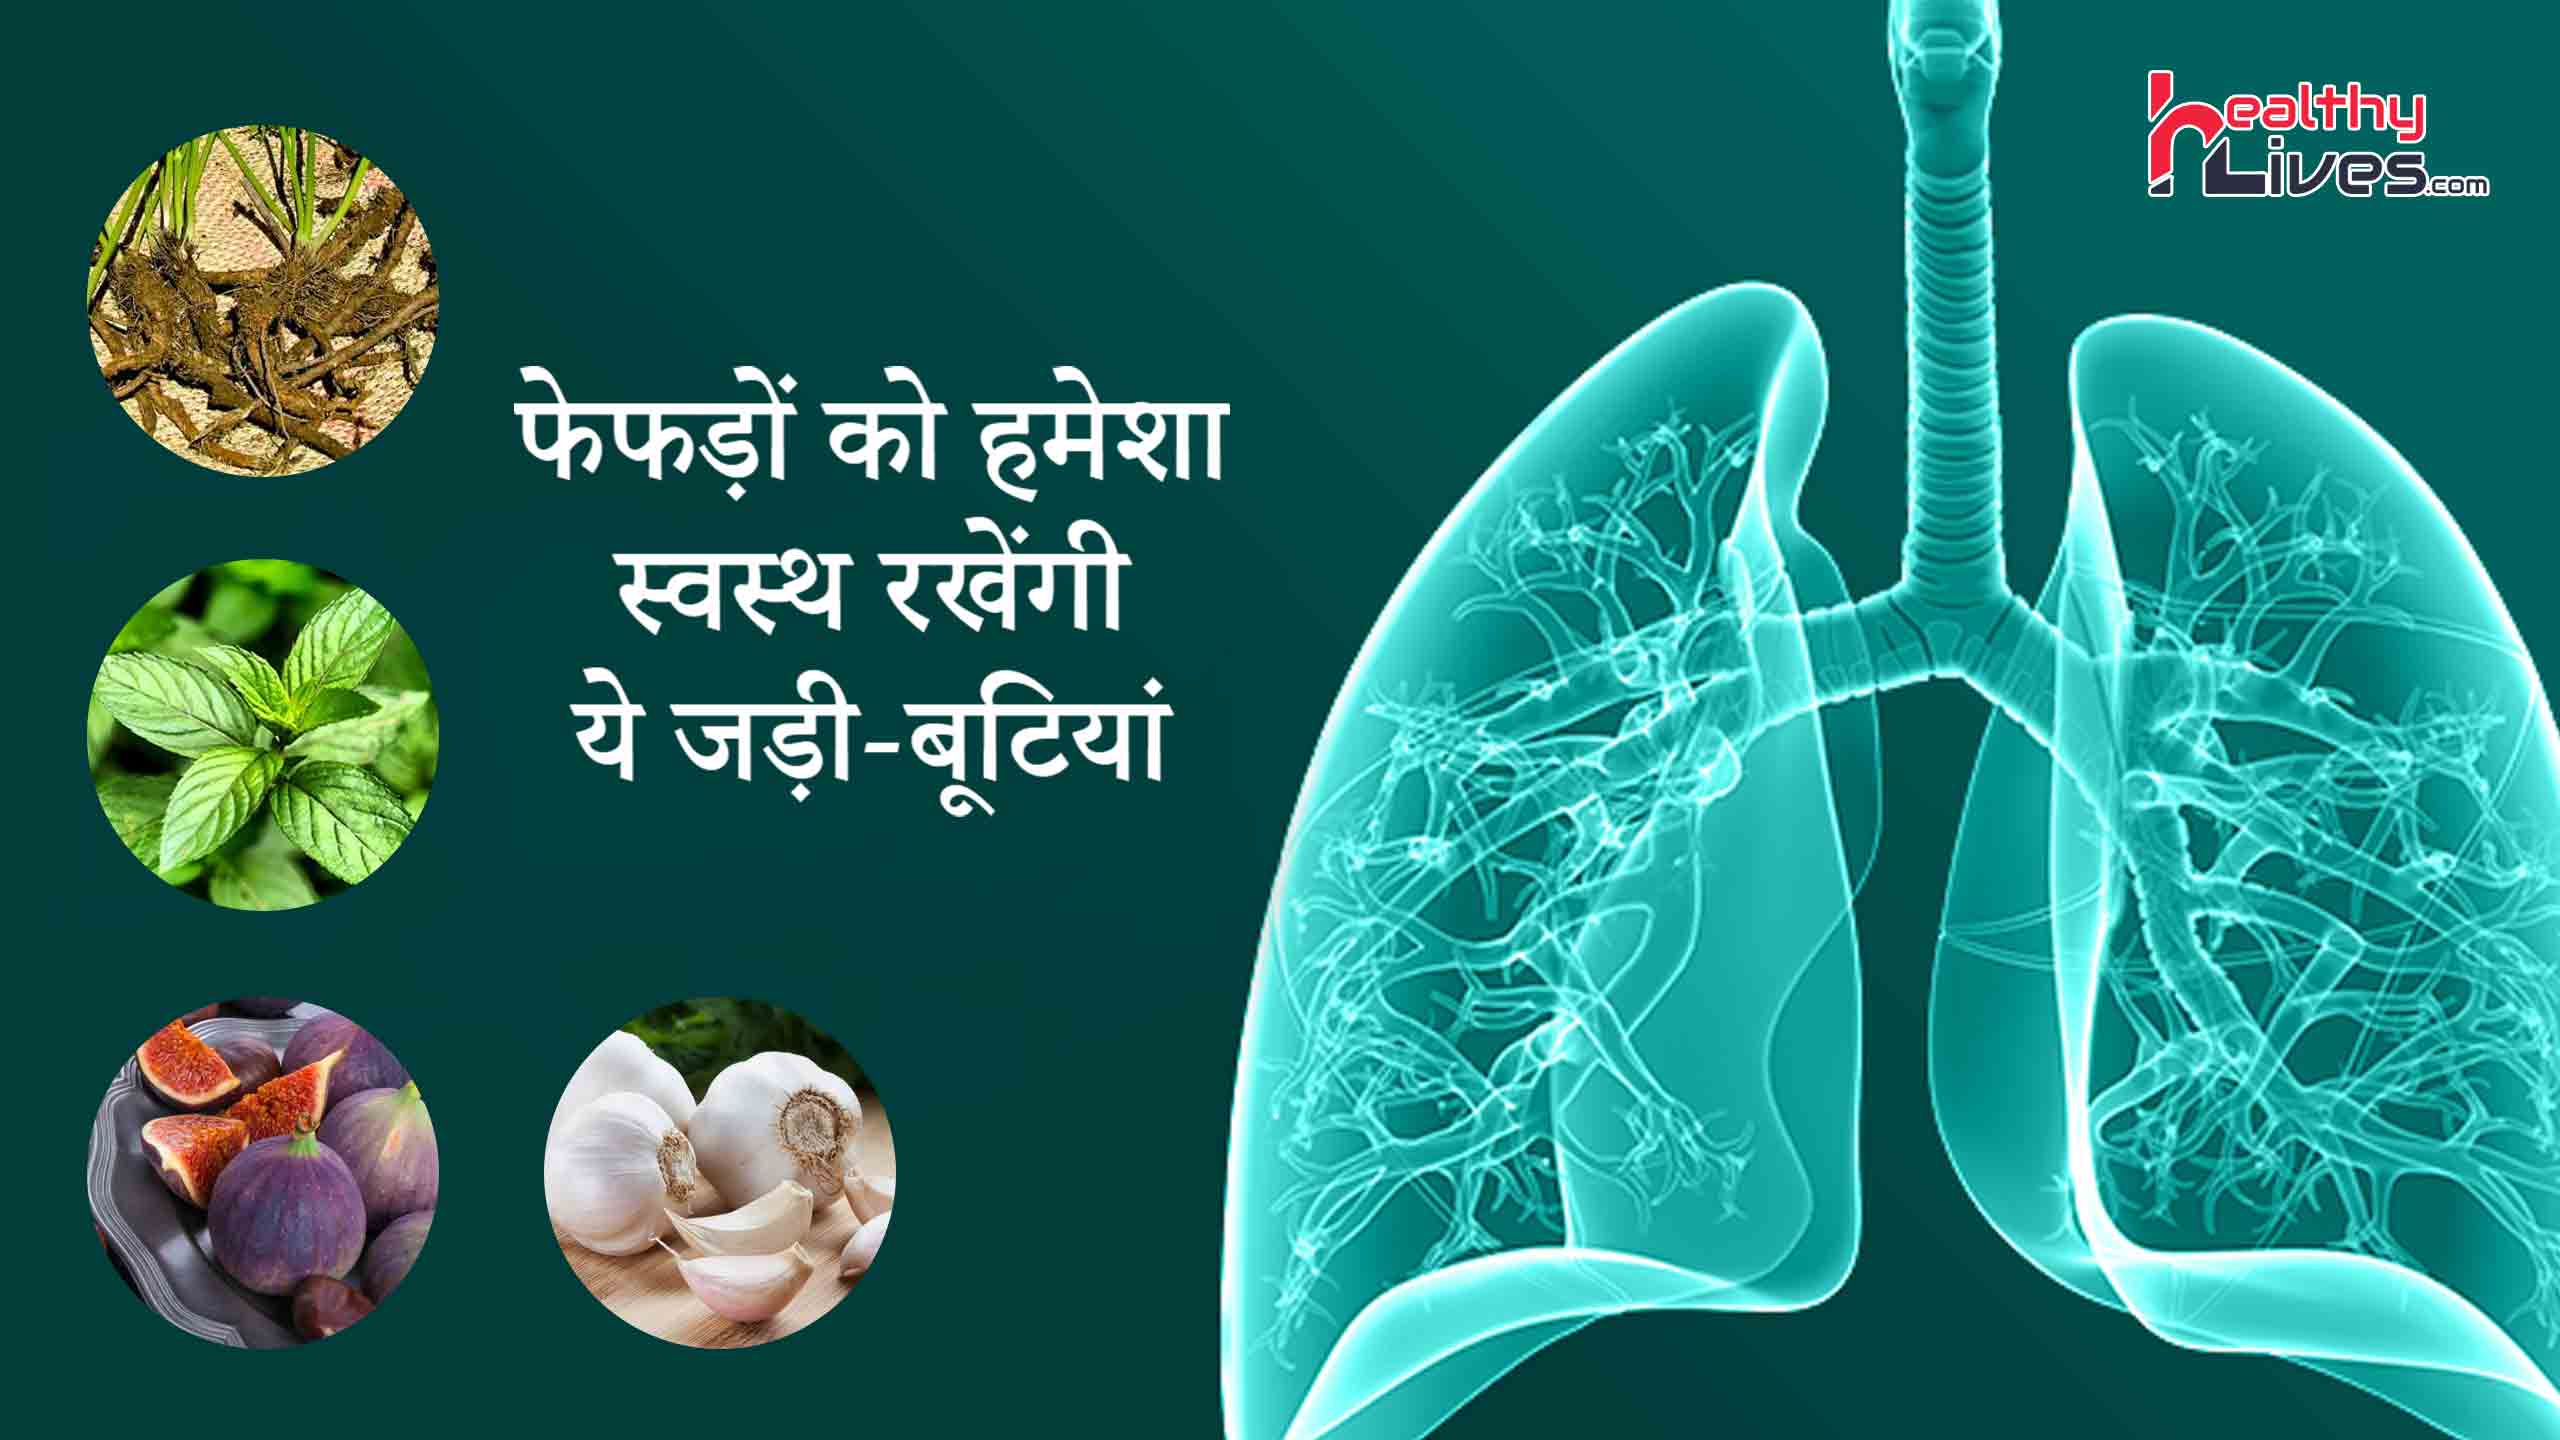 Herbs for Lungs Health - फेफड़ों को स्वस्थ रखने में मदद करे